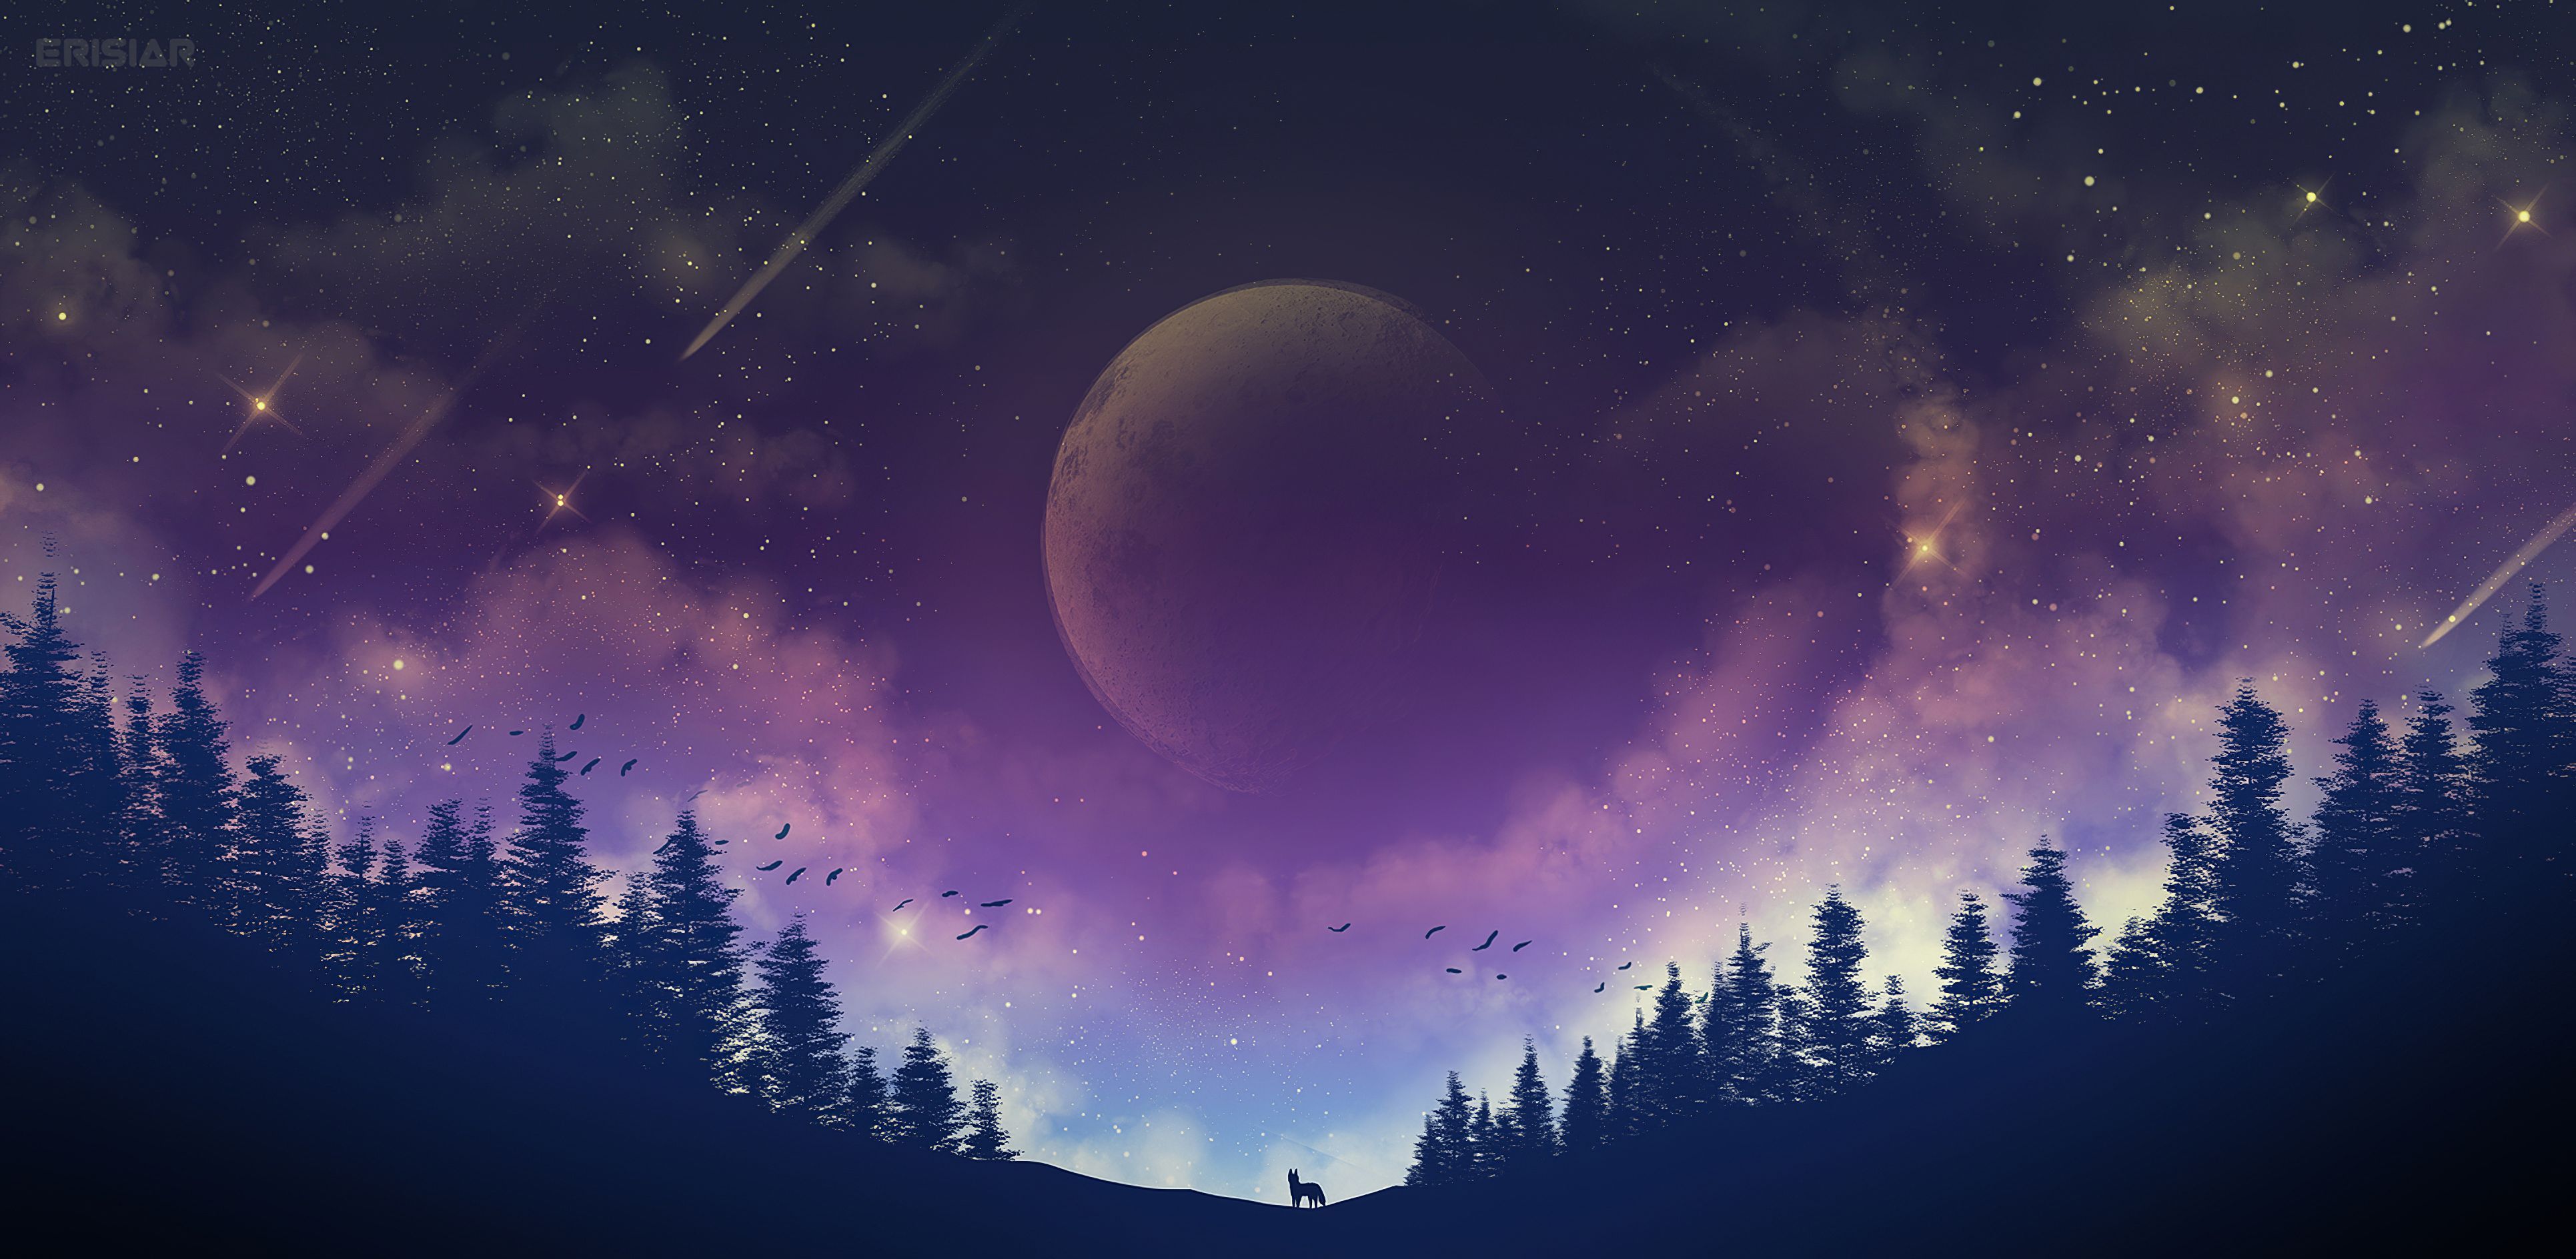 Một bức ảnh đẹp lung linh của mặt trăng và ngôi sao trên bầu trời đêm sẽ khiến bạn nhớ đến những cảm giác đầy lãng mạn và uyên ương. Hãy cùng khám phá bức ảnh này để cảm nhận thêm những khoảnh khắc sung sướng trong cuộc sống.